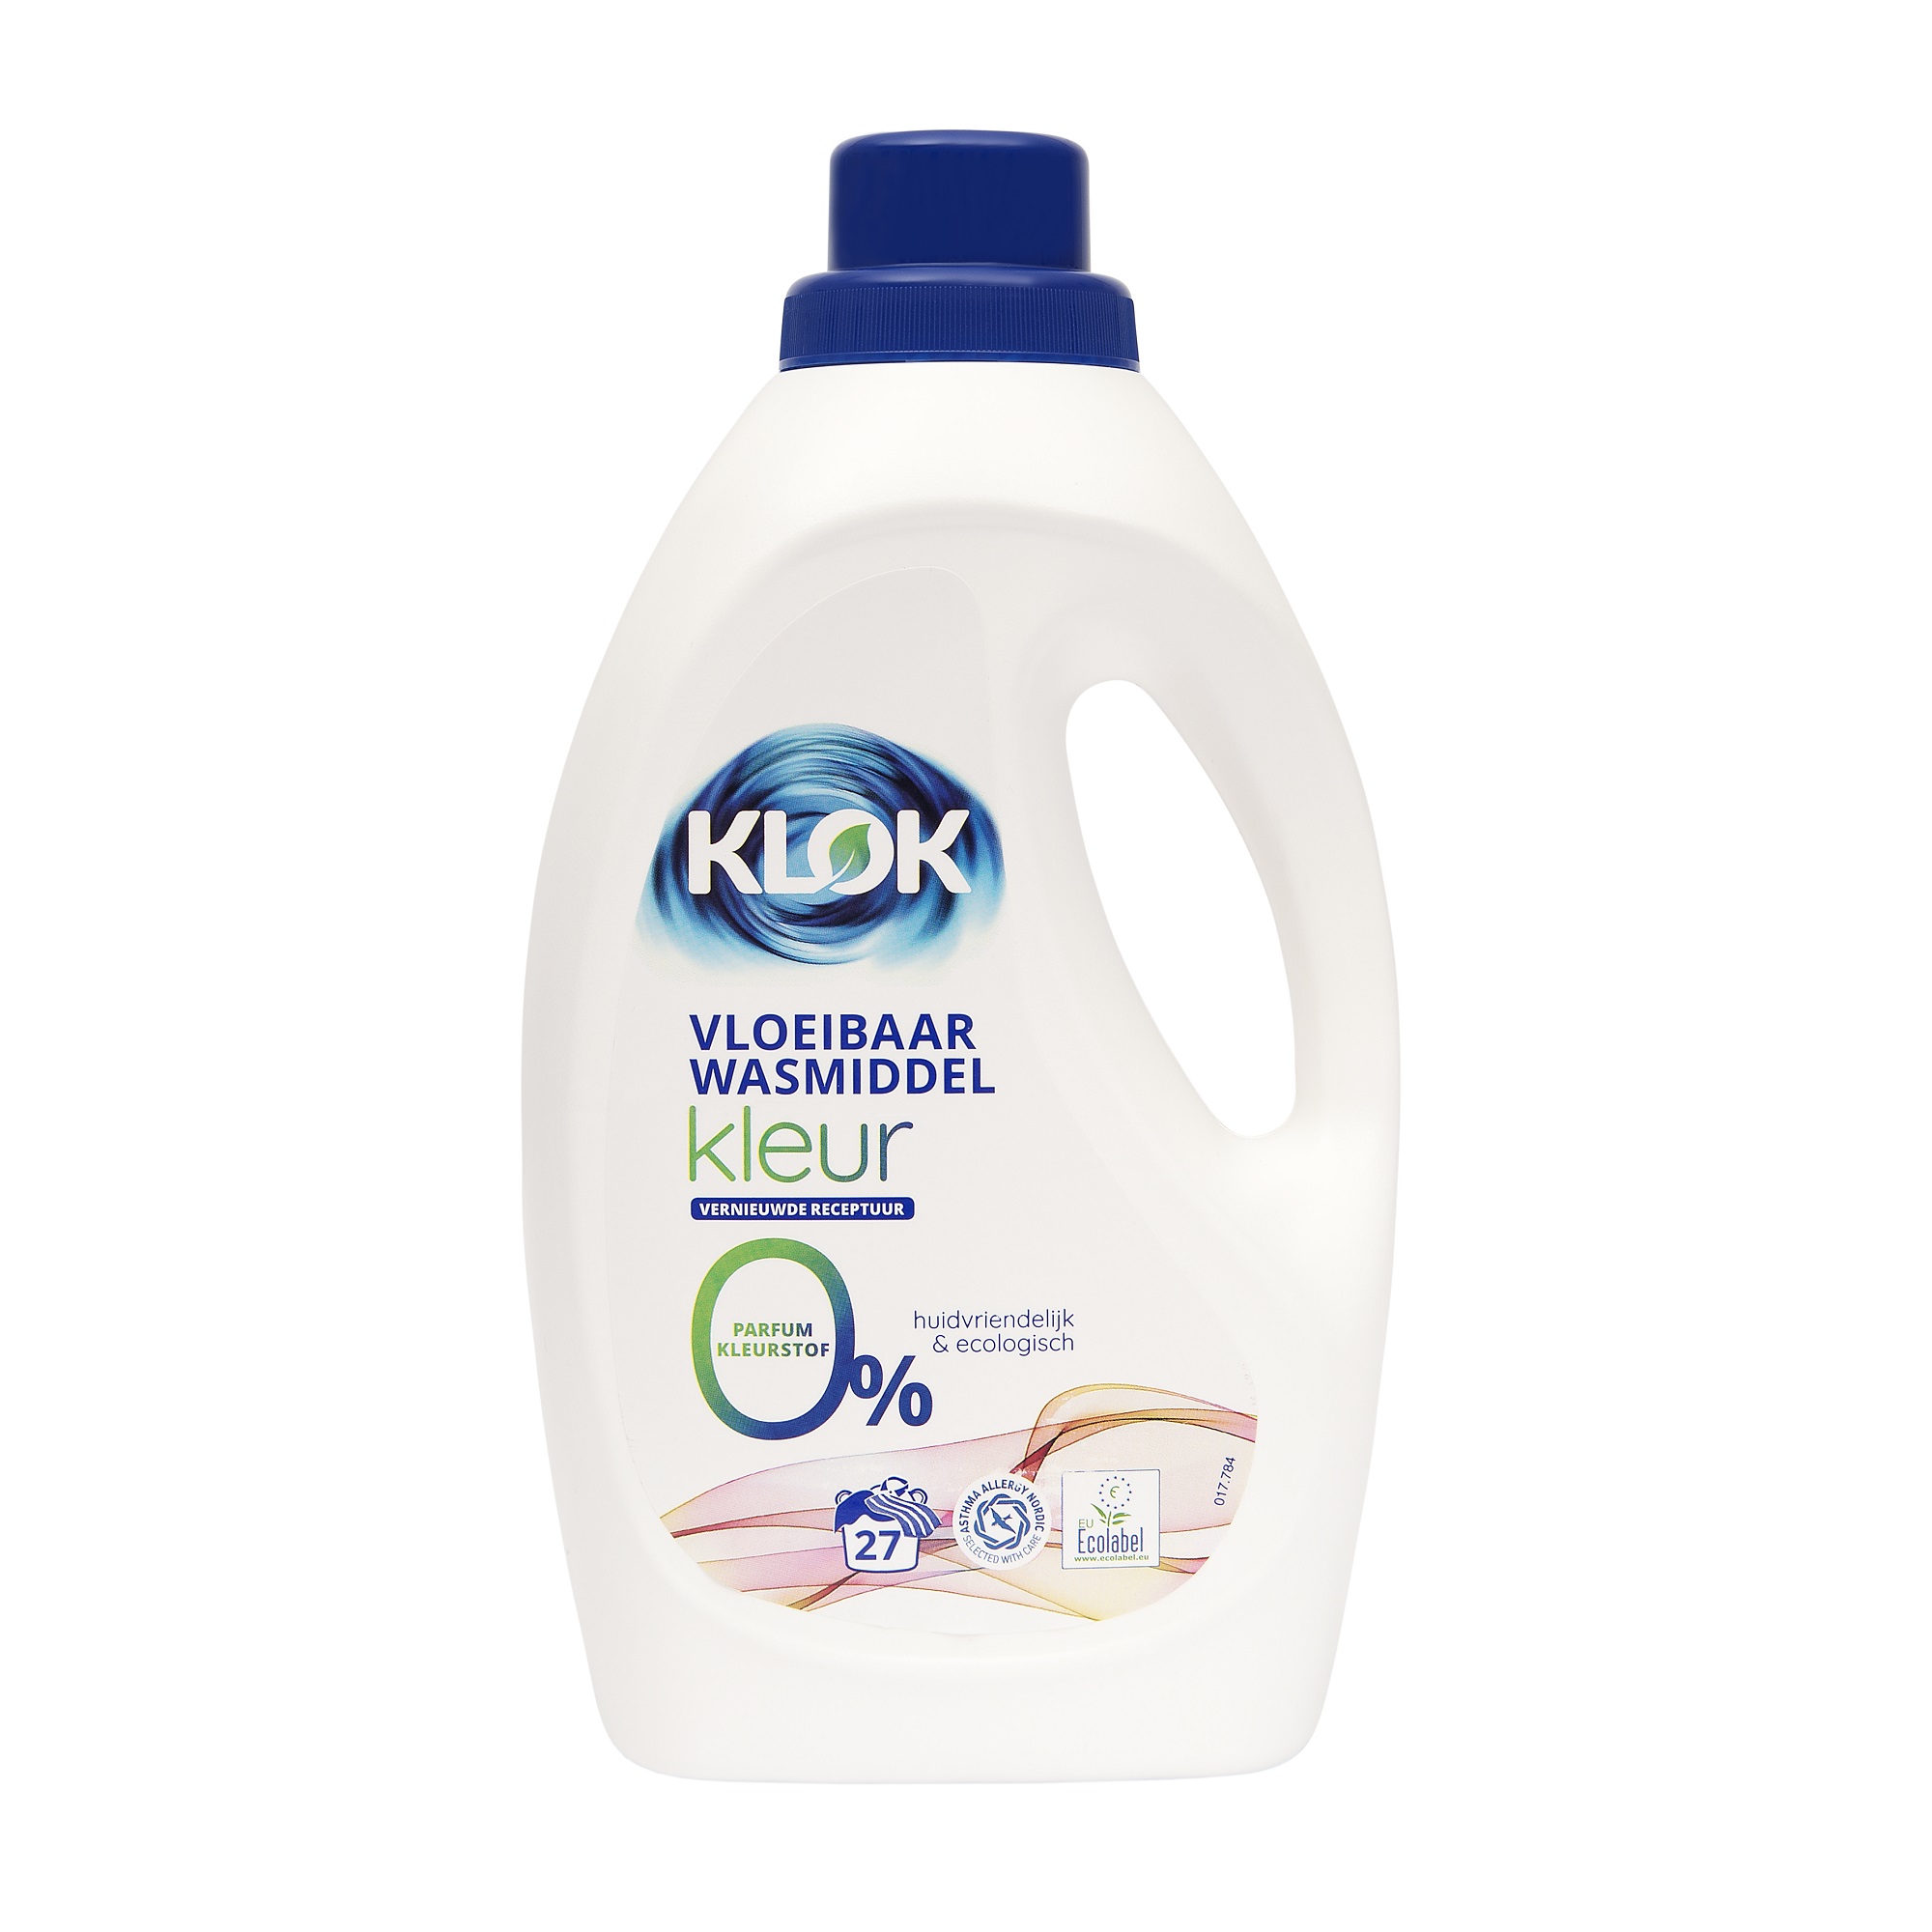 Detergent lichid pentru rufe colorate, 1485 ml, Klok